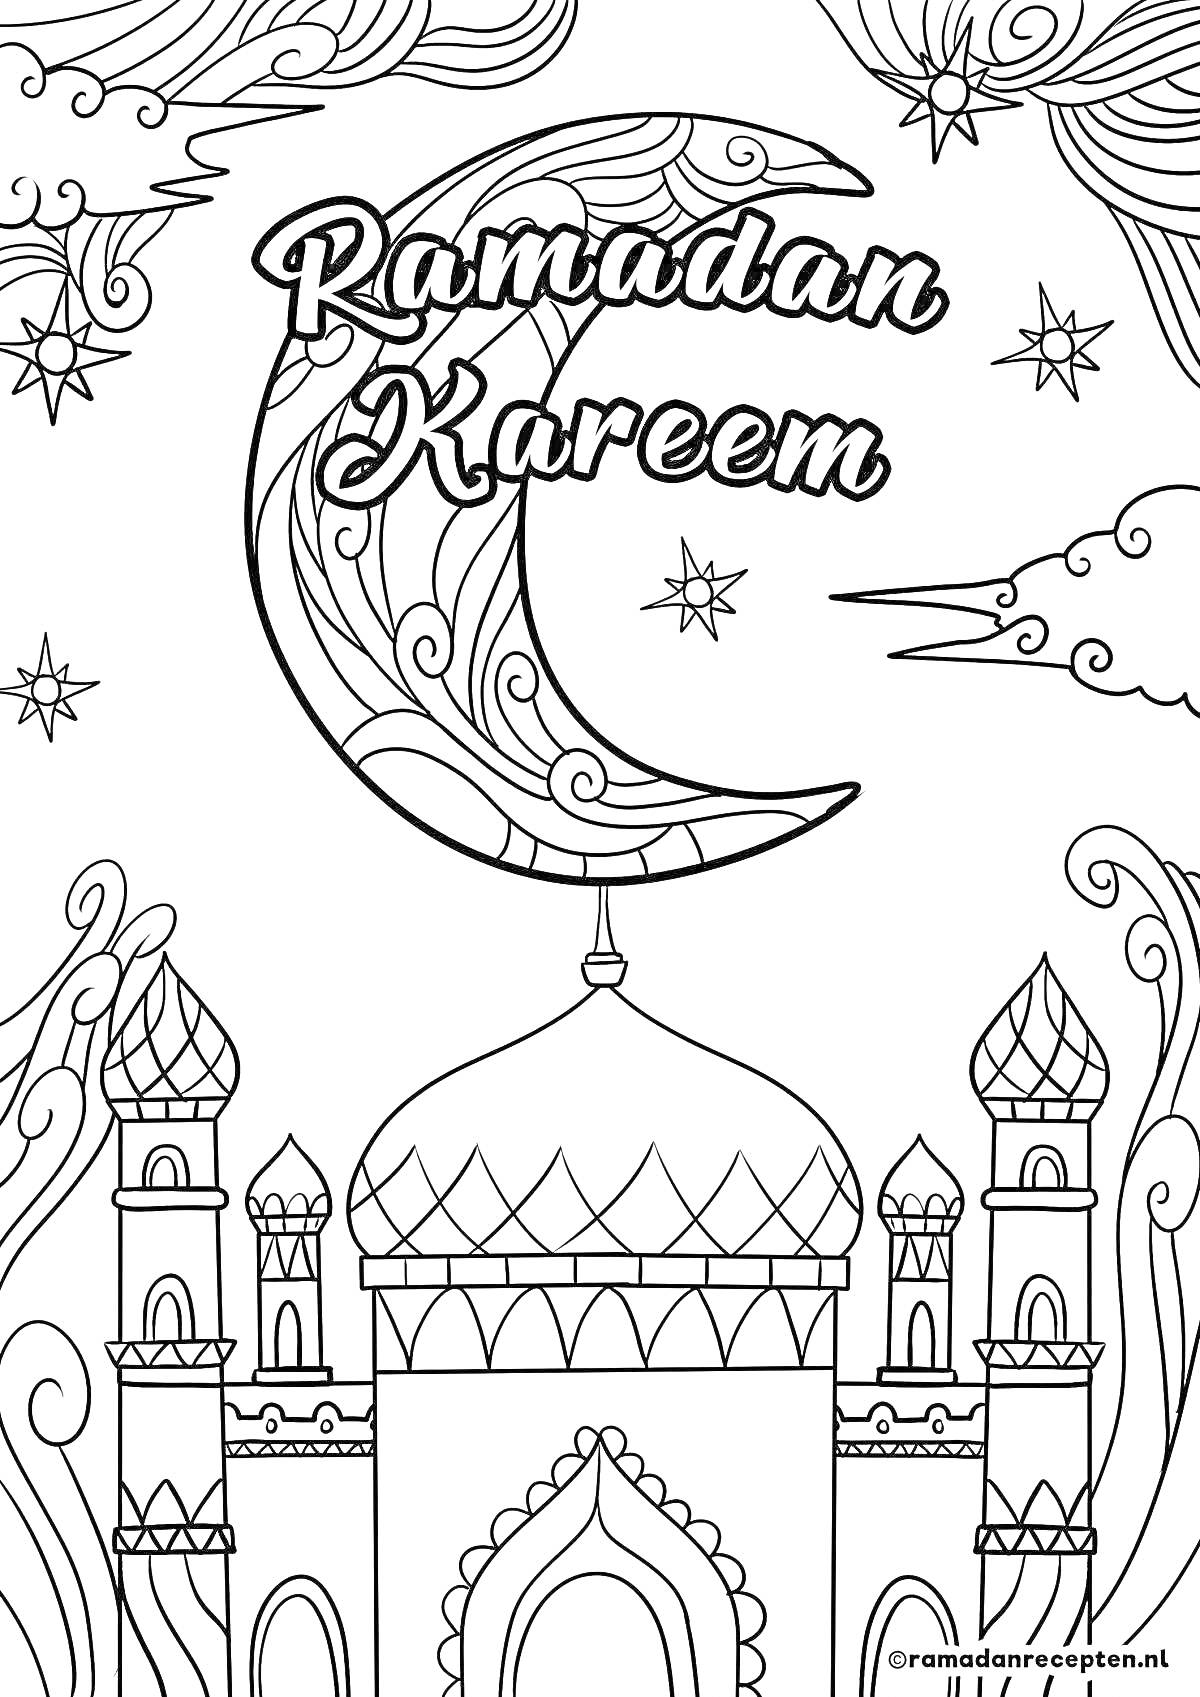 рамадан карим с полумесяцем, звёздами и мечетью